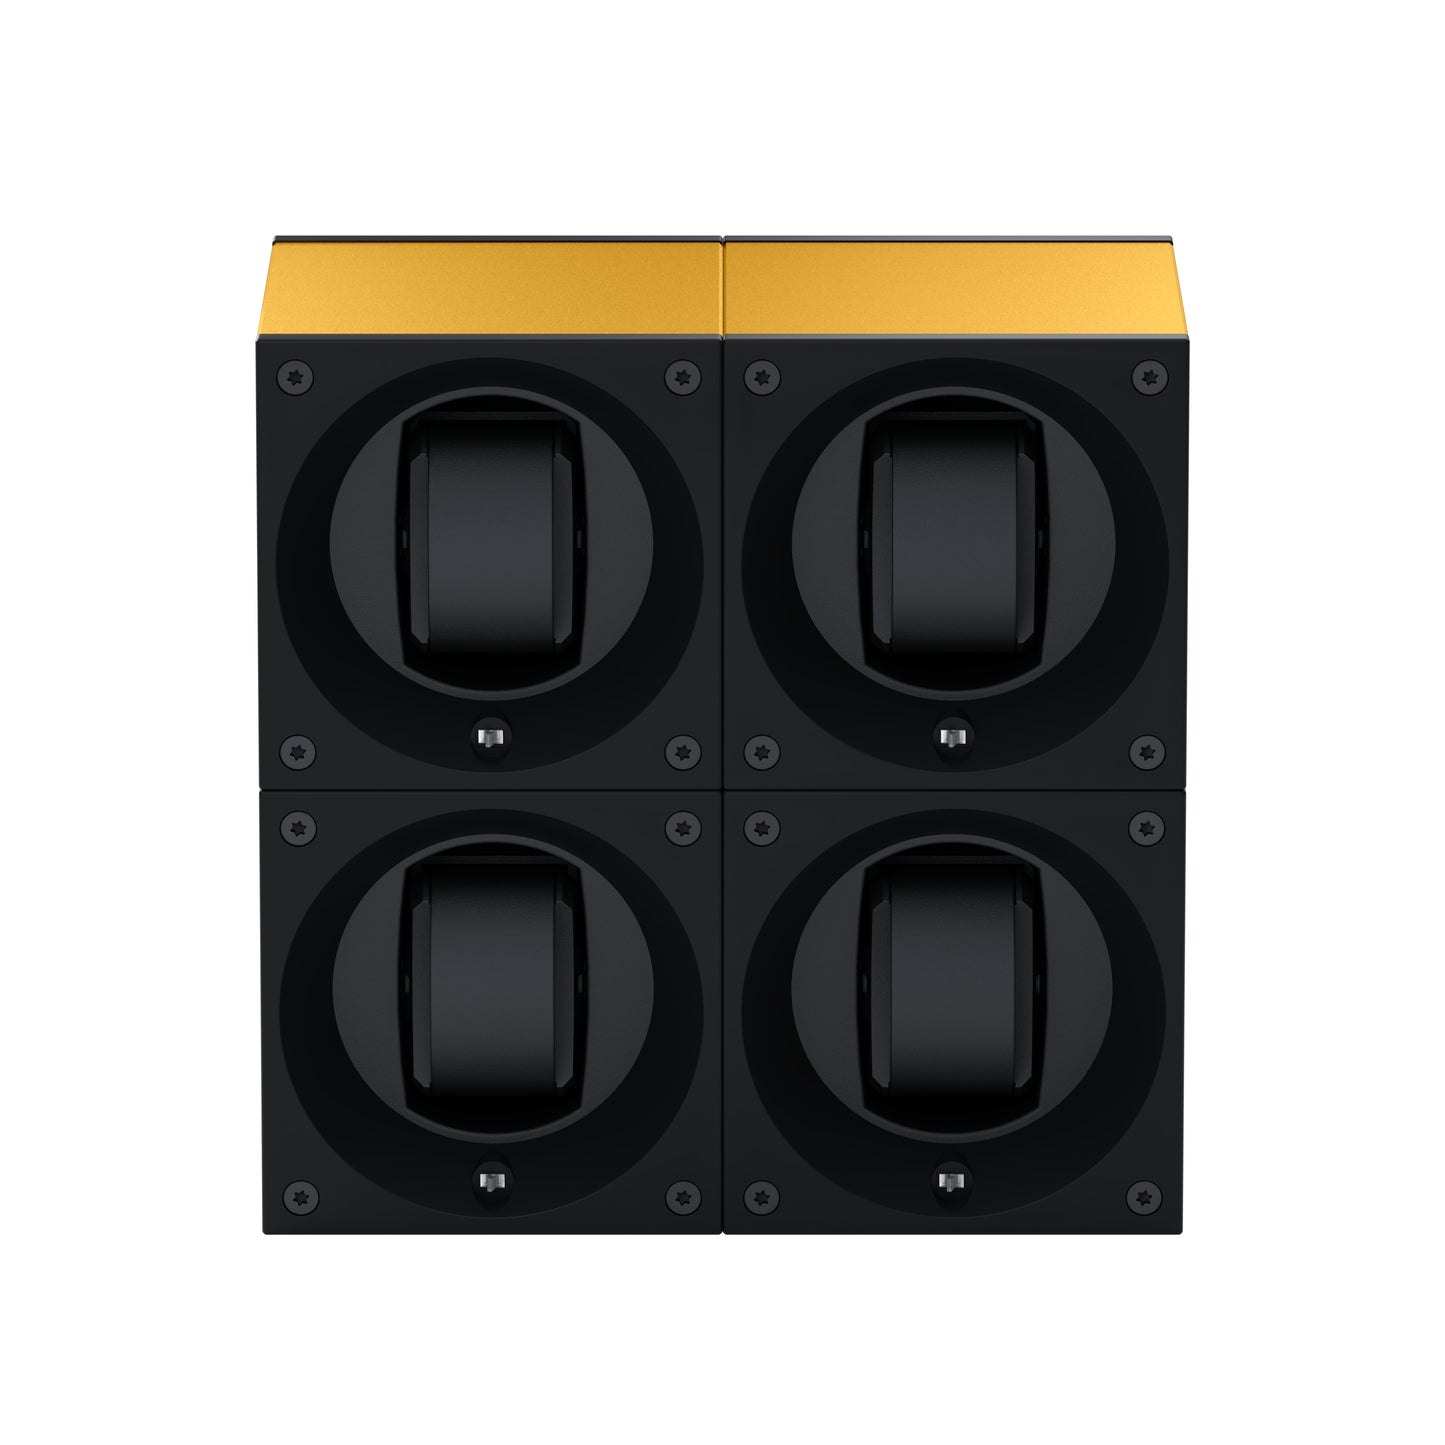 Masterbox 4 montres Aluminium Or : écrin rotatif pour montre automatique